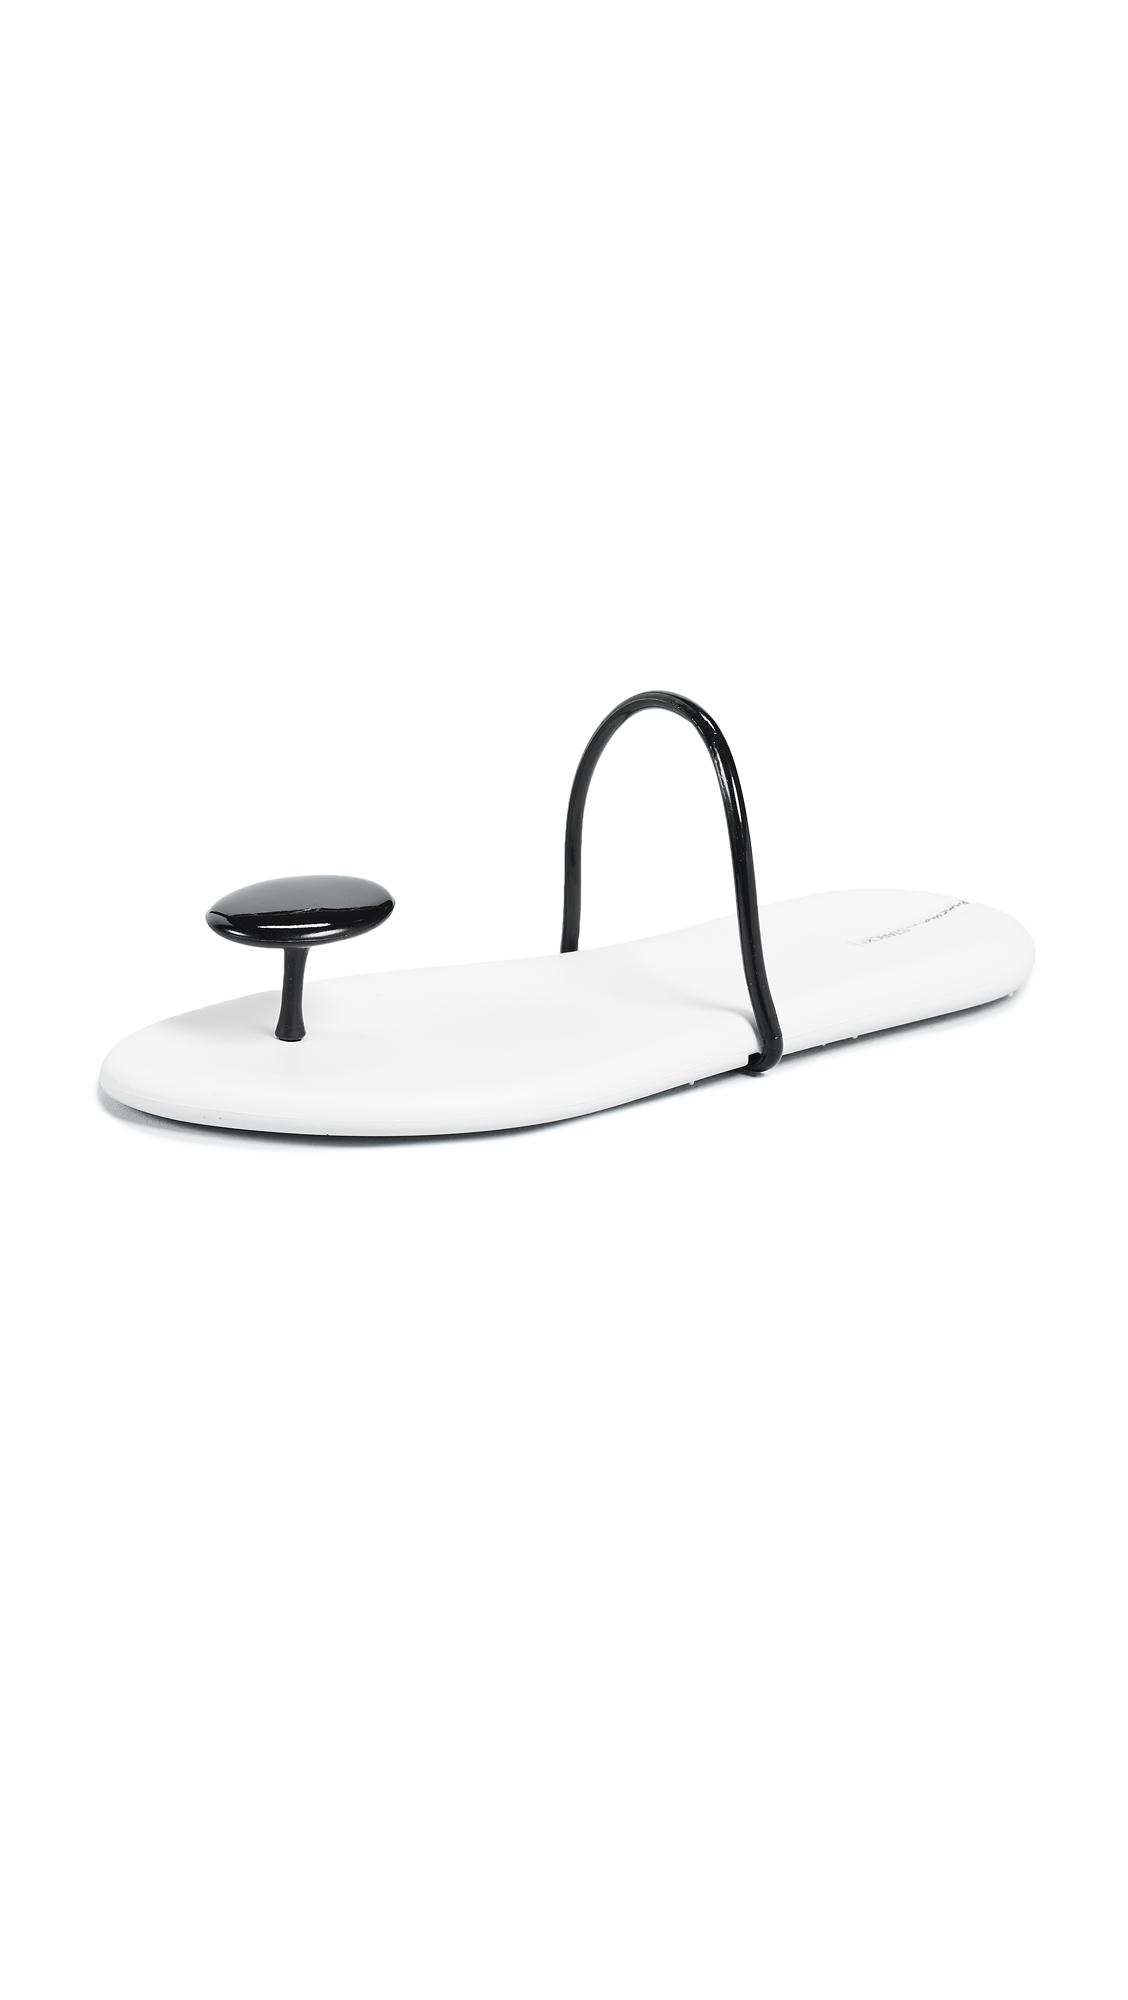 Ipanema Philippe Starck Thing U Iisandals in White | Lyst